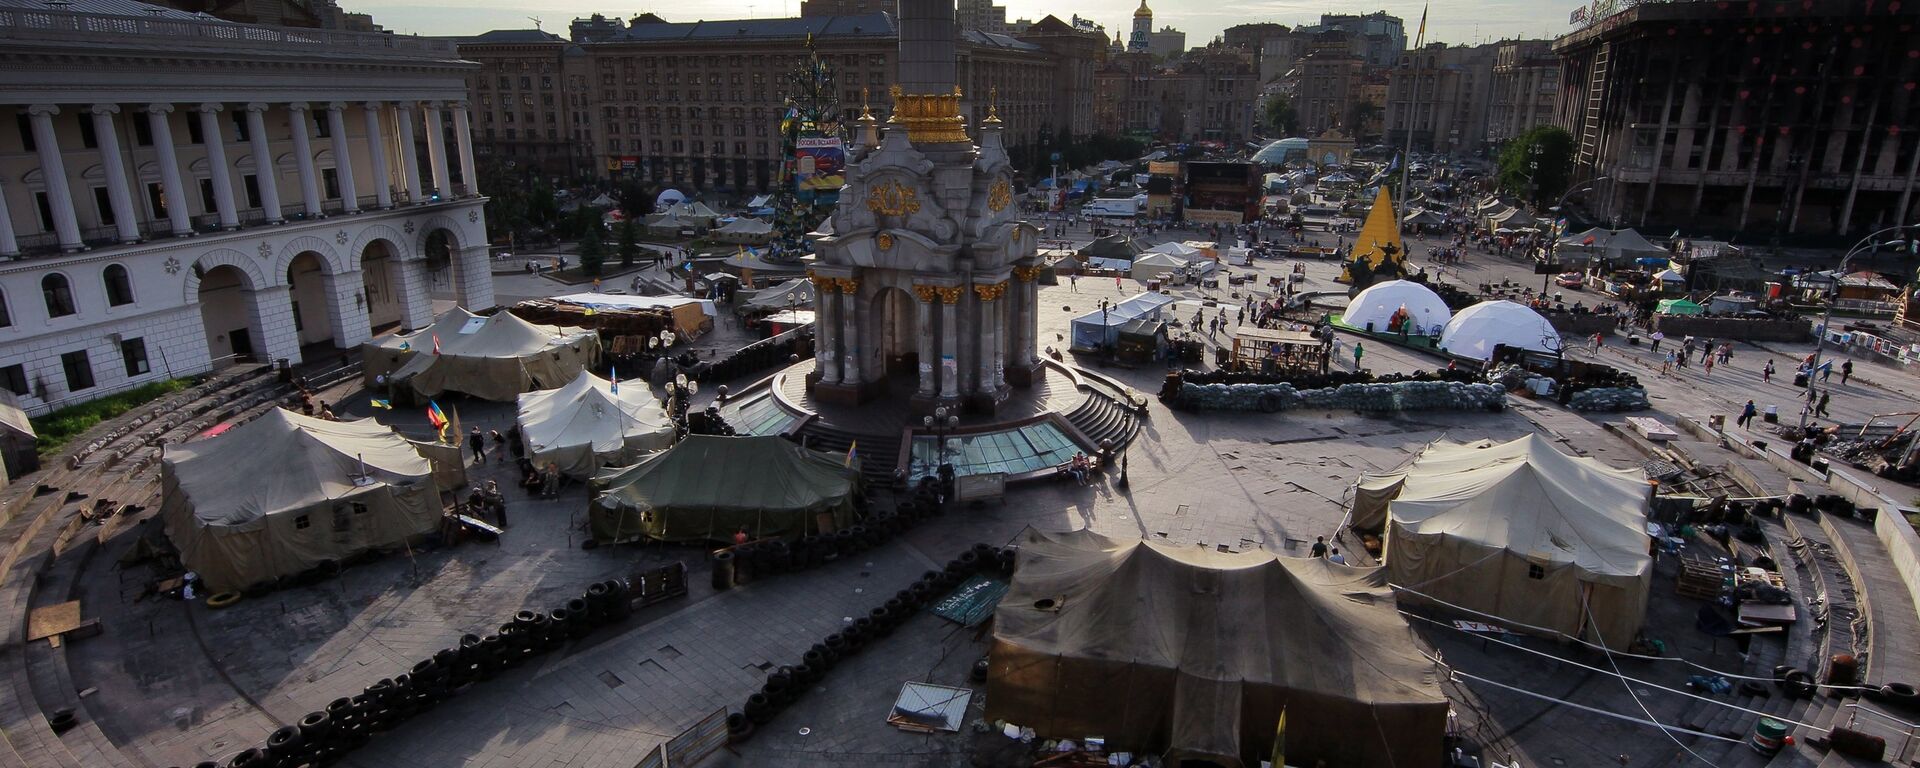 Площадь Независимости в Киеве - Sputnik Արմենիա, 1920, 24.08.2021